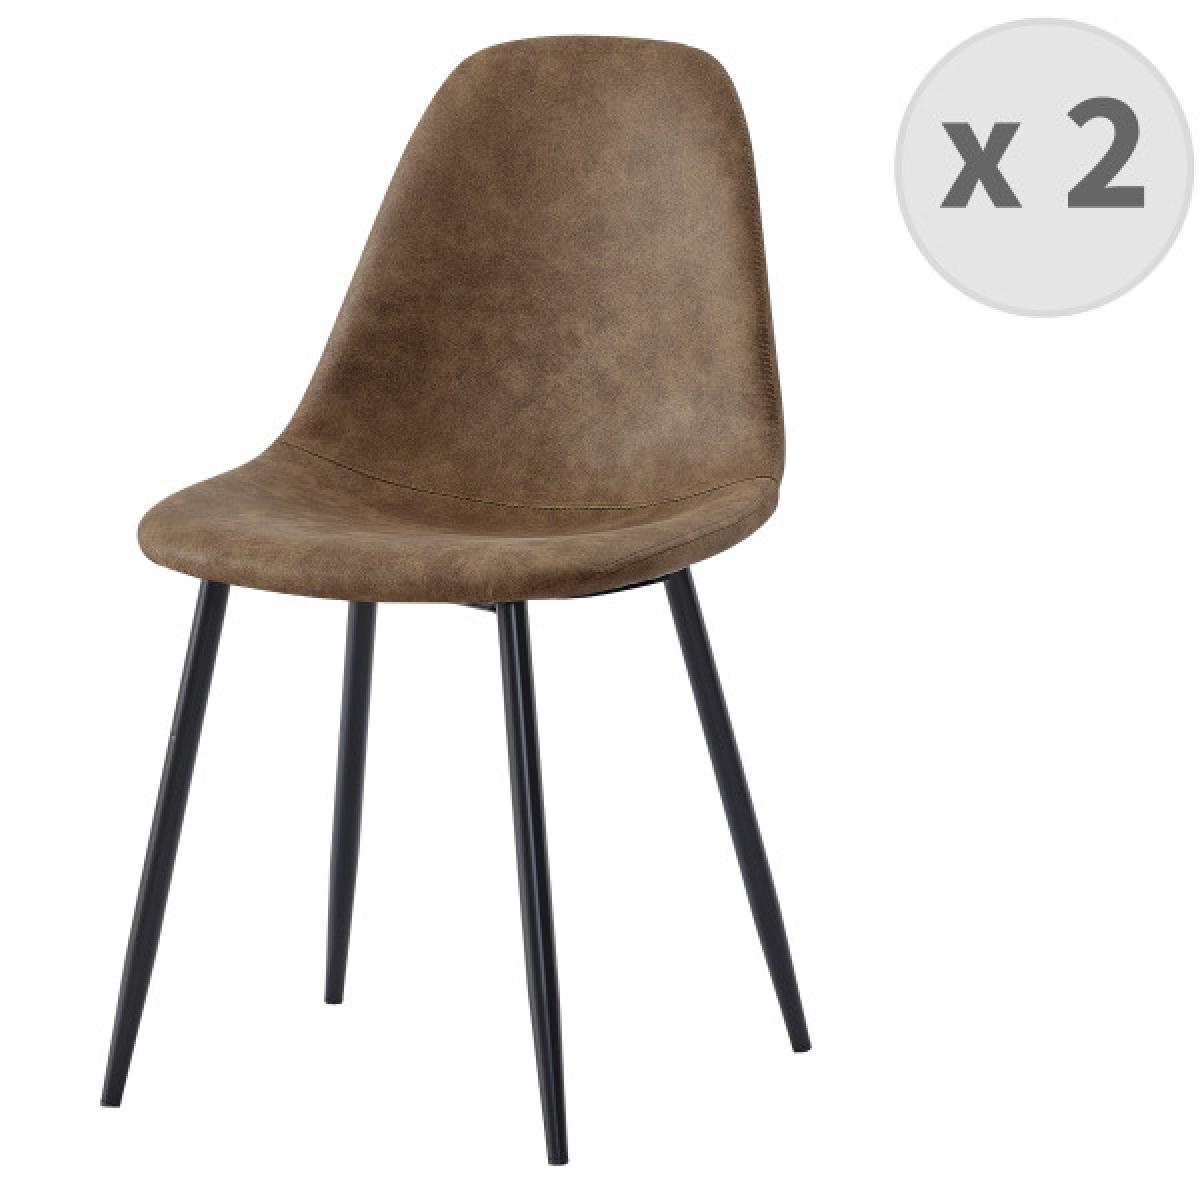 Moloo - ORLANDO - Chaise microfibre vintage brun pieds métal noir (x2) - Chaises